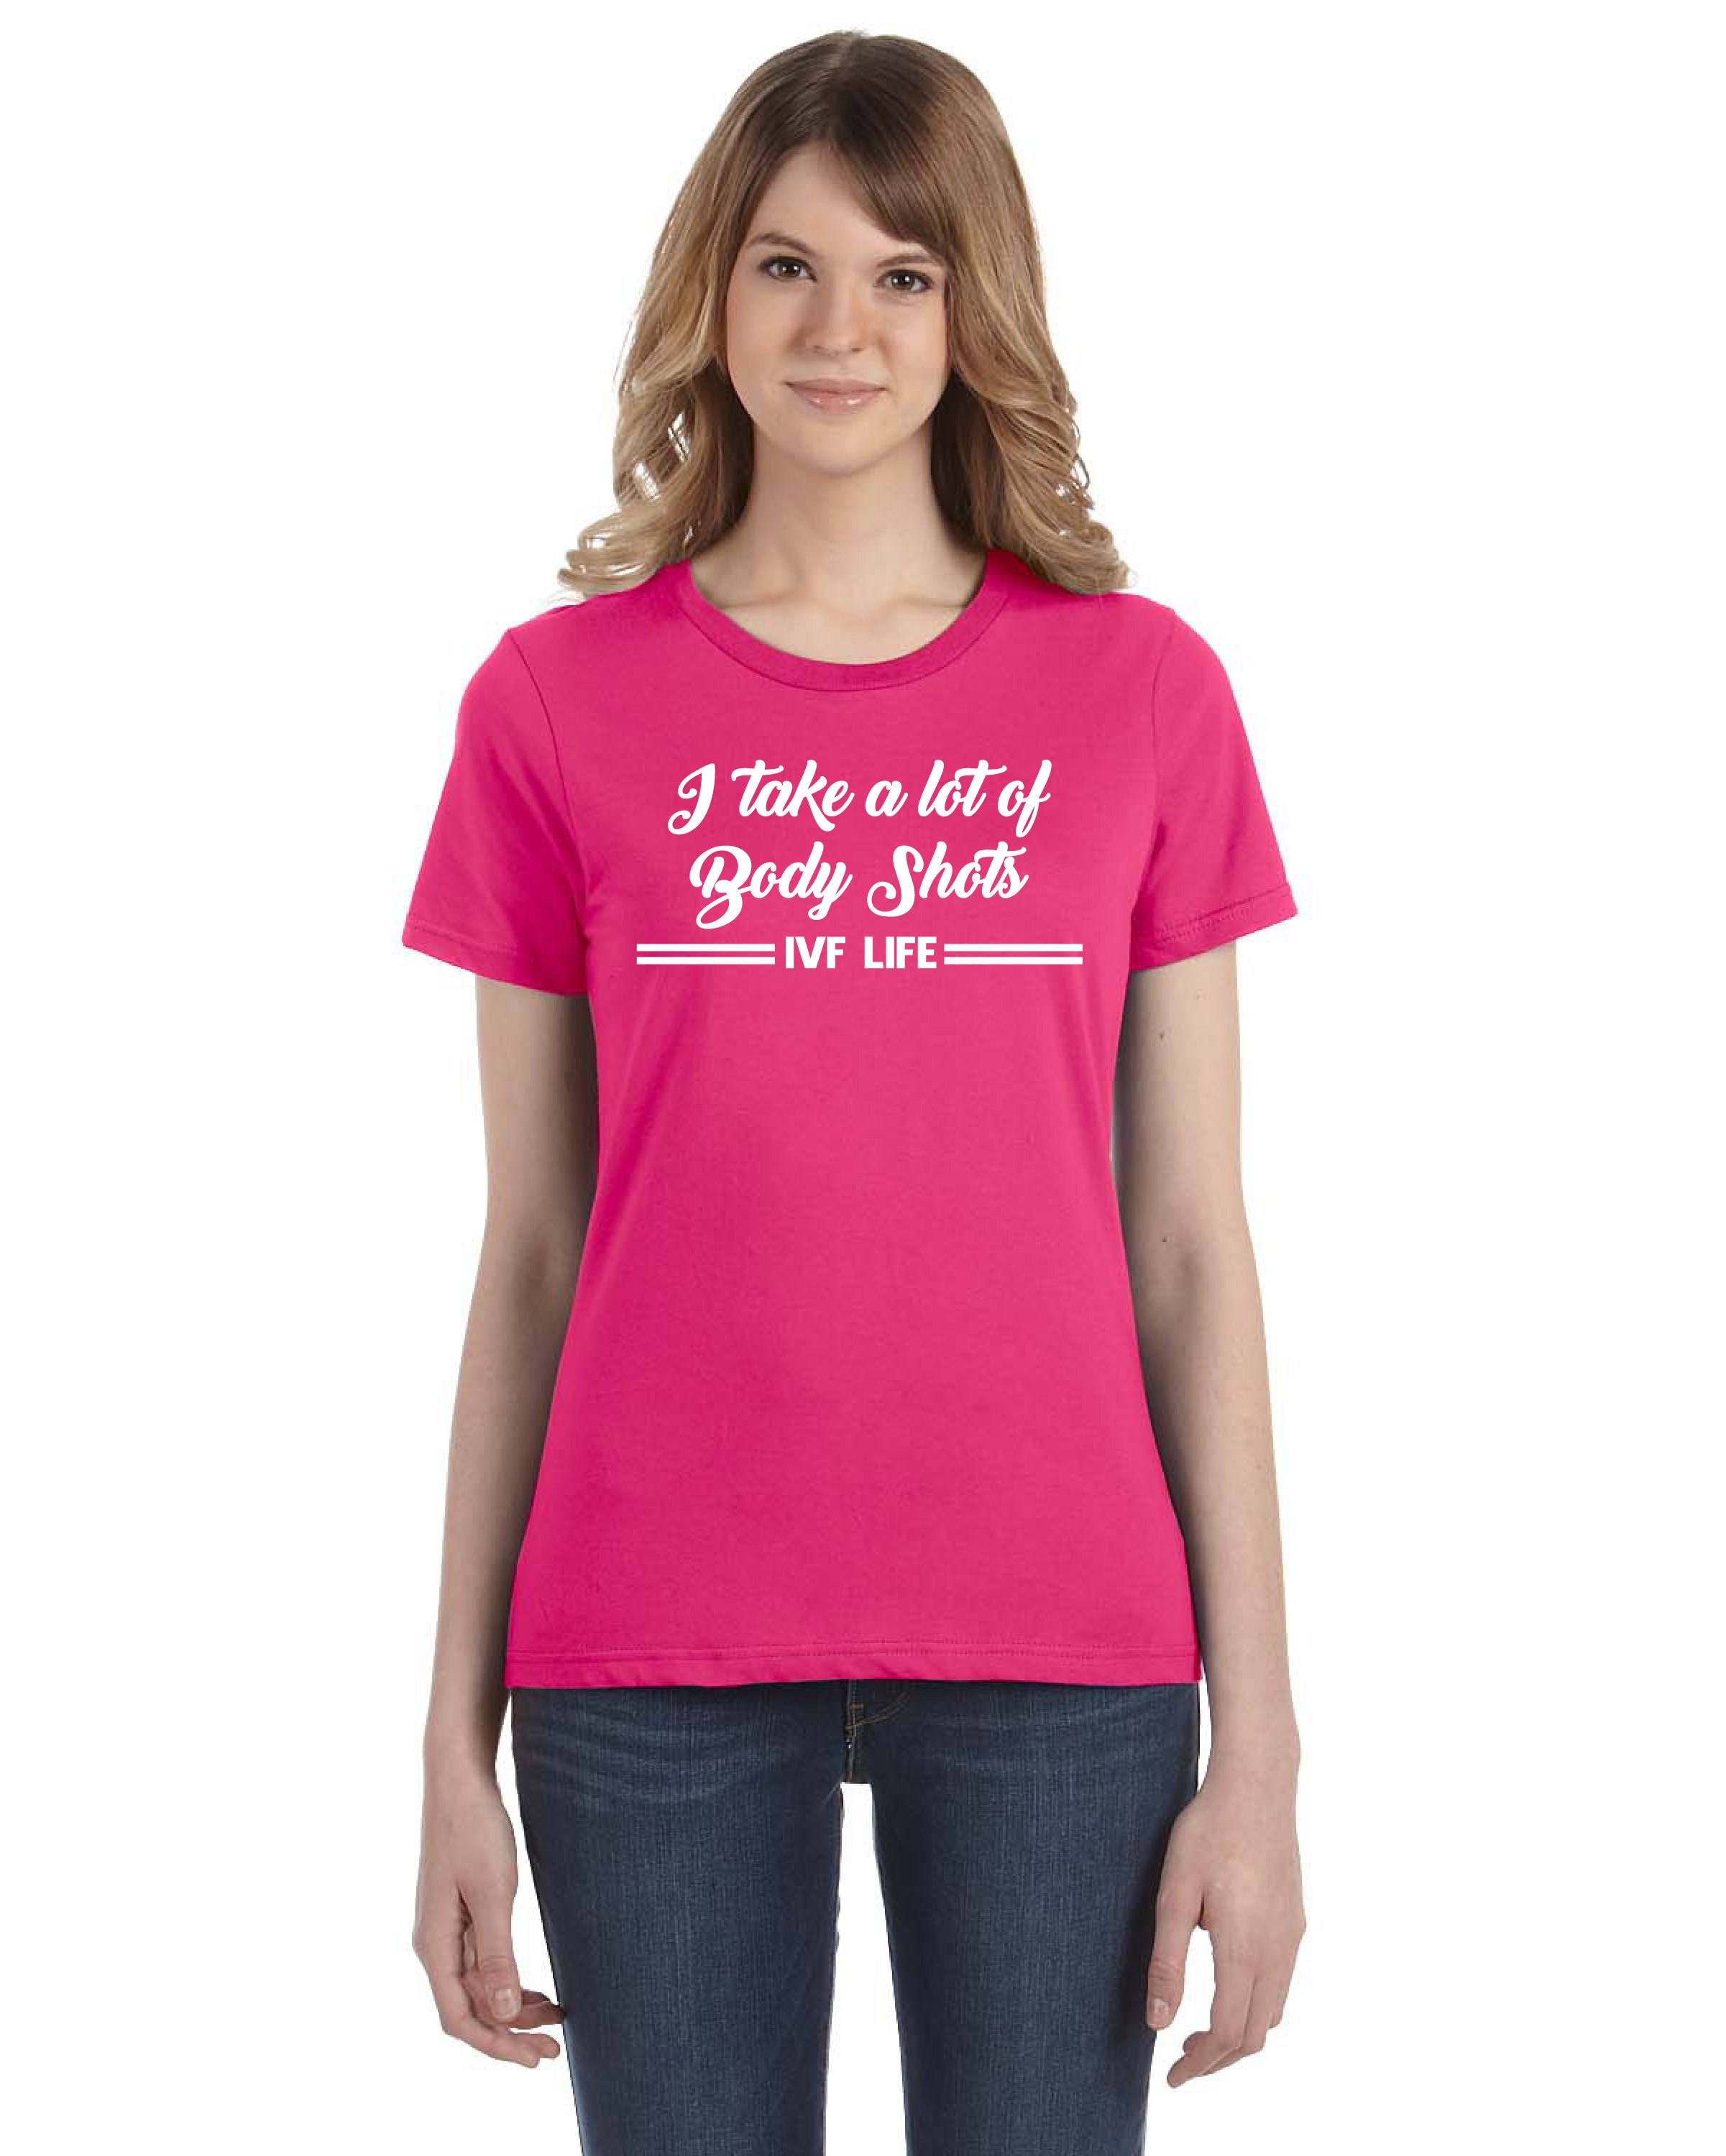 IVF Shirts IVF Shirts for Men IVF Shirts for Women - Etsy